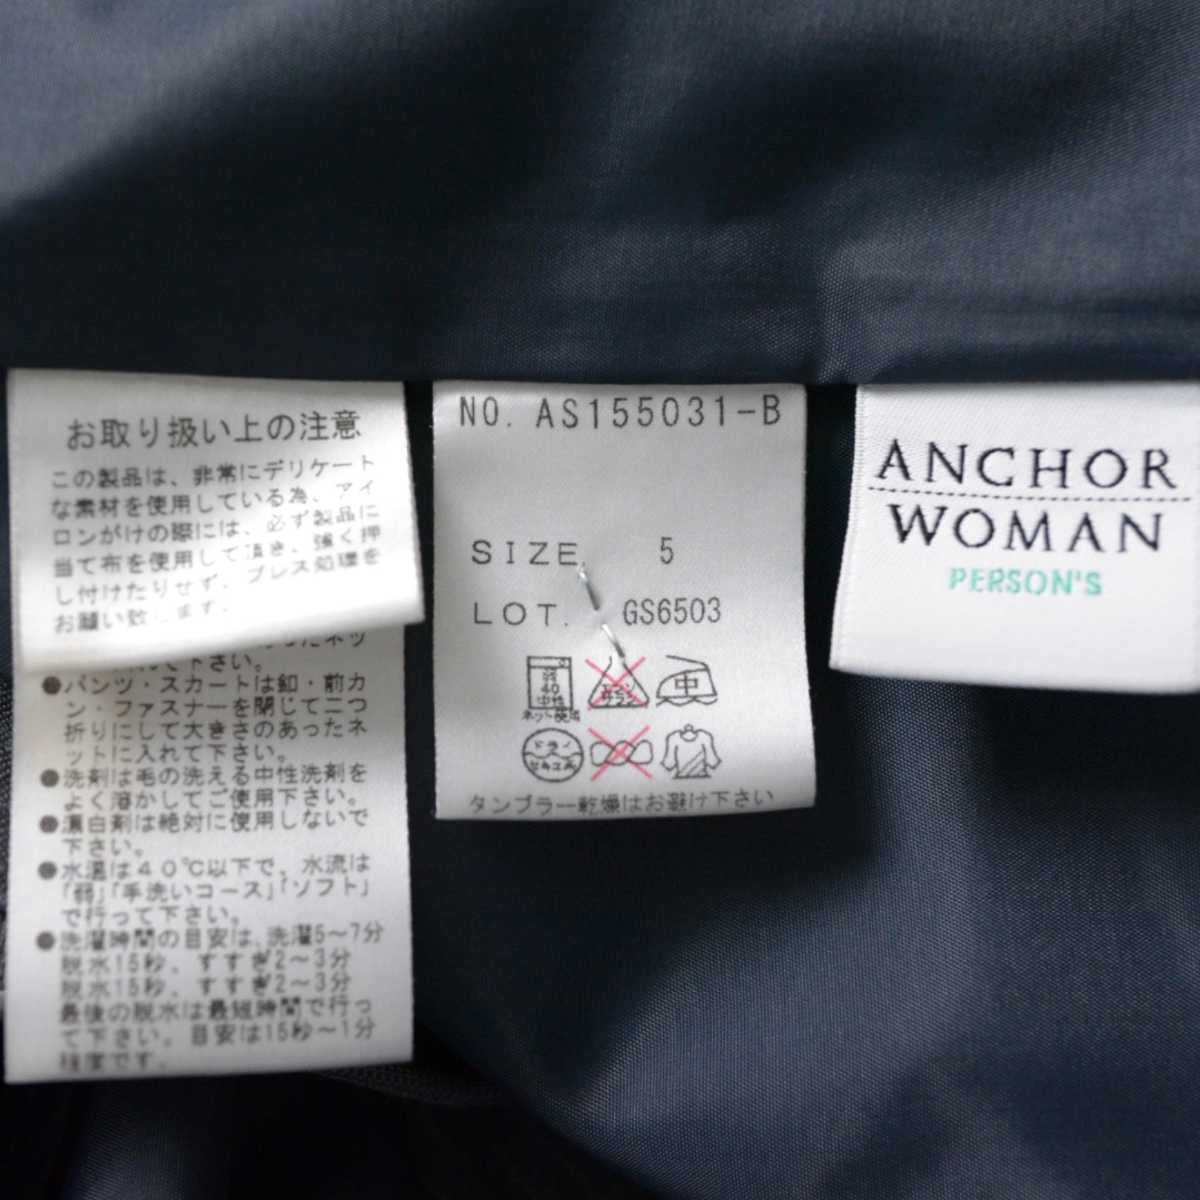  размер 5 ANCHOR WOMAN PERSON\'S женский костюм юбка полоса омыватель bru стрейч материалы Person's серый 